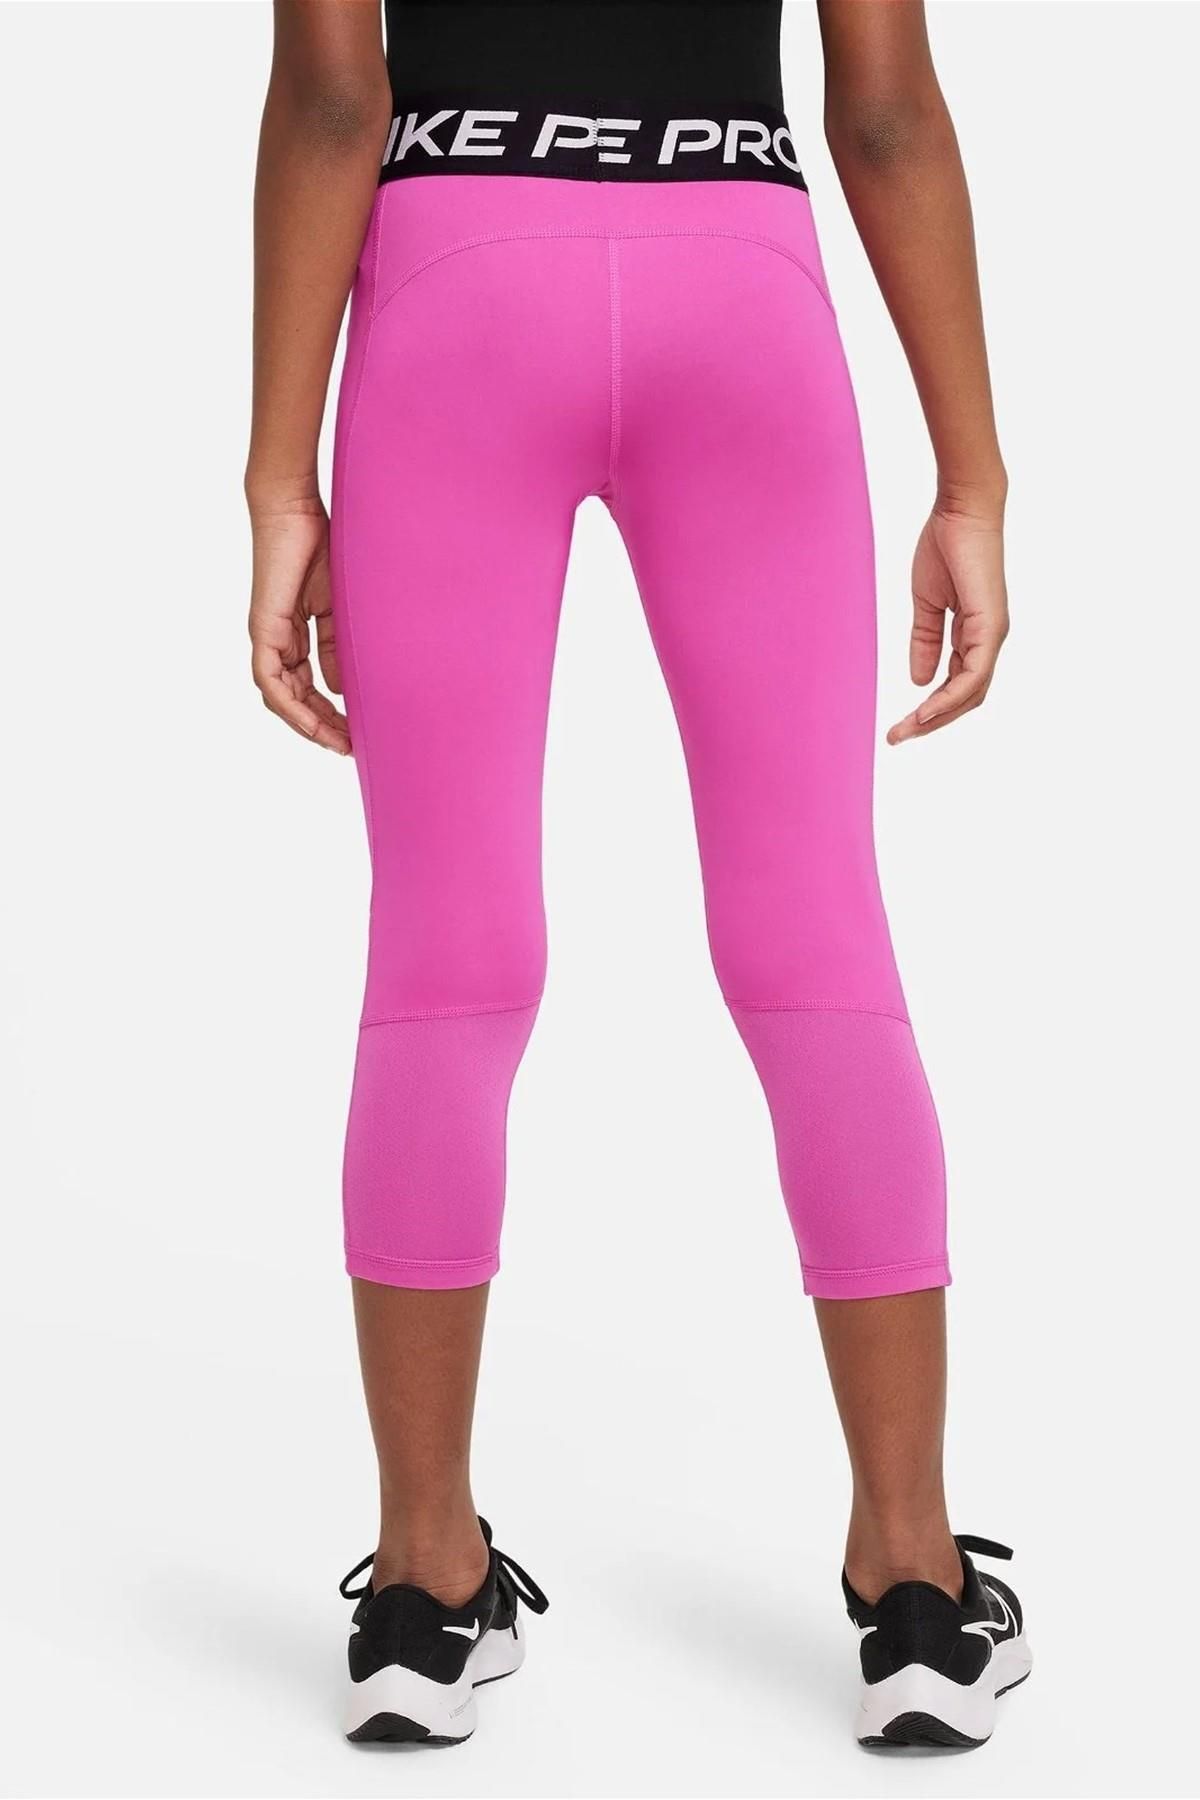 Nike Pro Girls L Capri Leggings Black White Spatter Pink Trim Dri Fit  Training